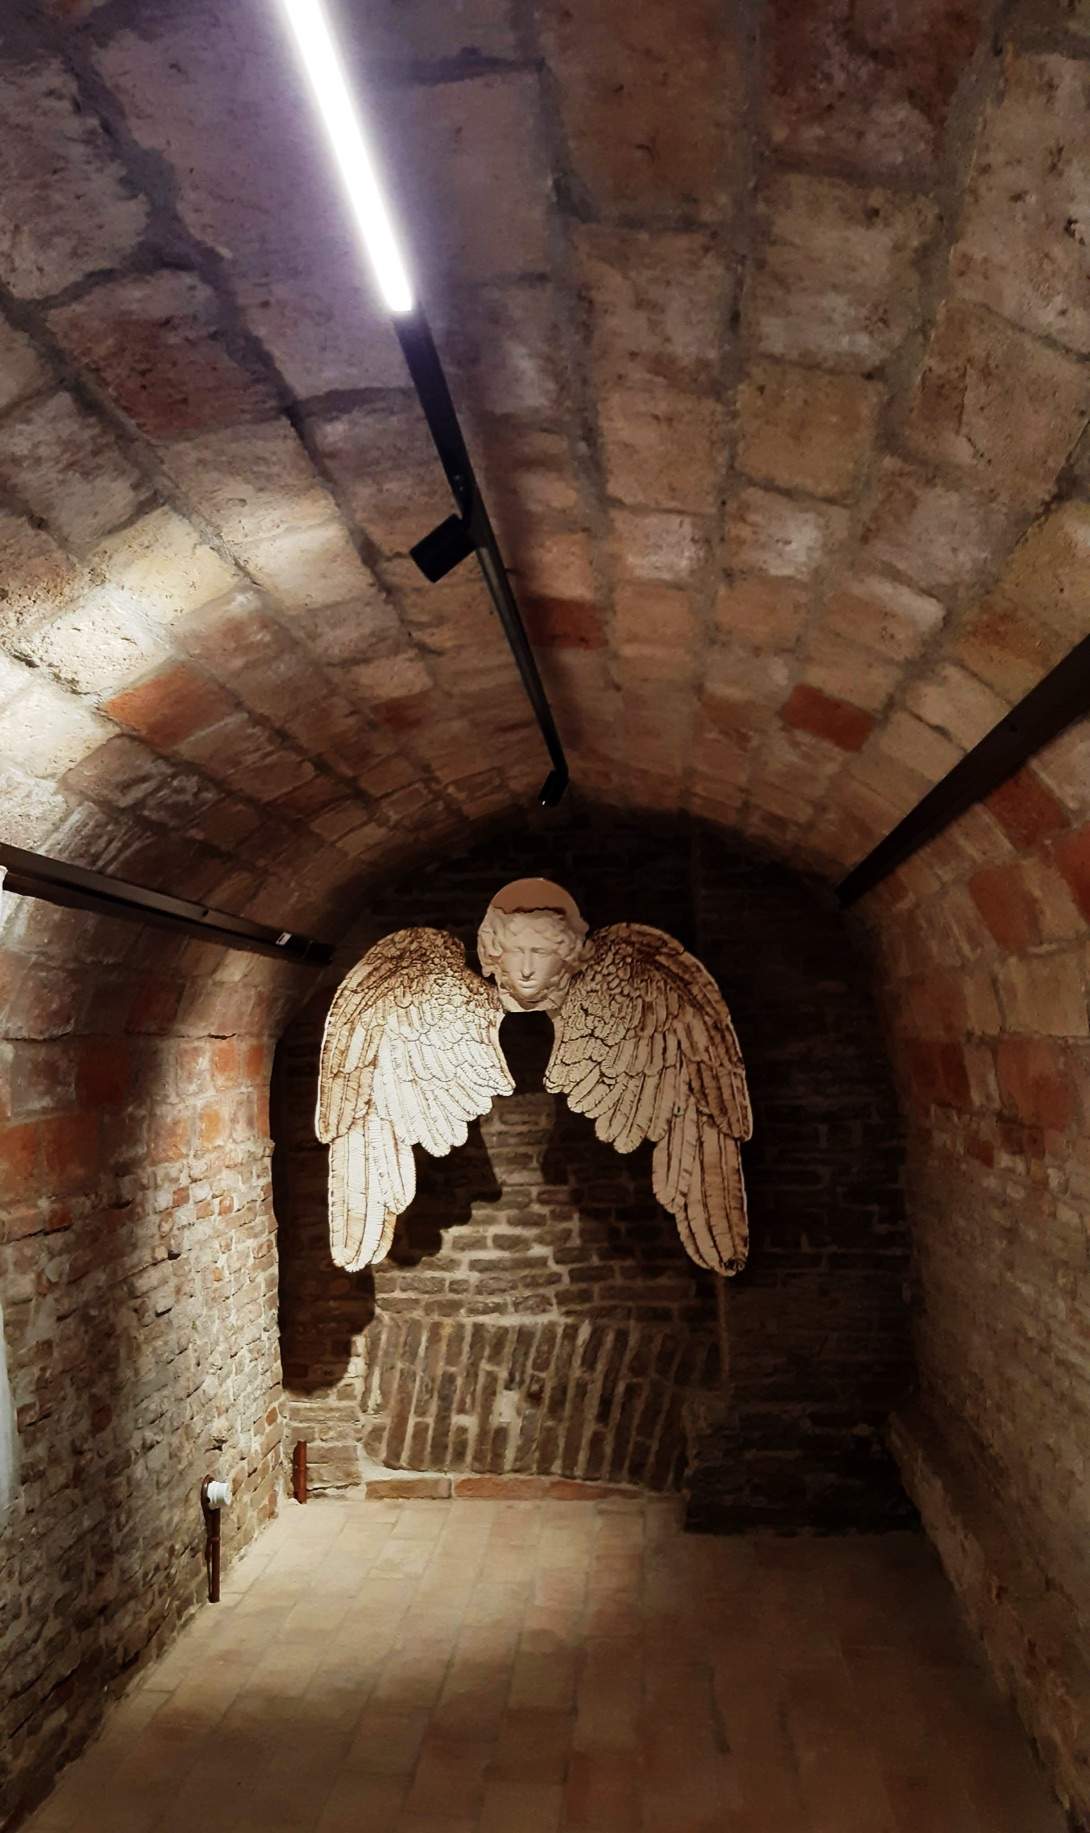 Installazione nella Cripta Cripta di San Pellegrino - Senigallia (AN)